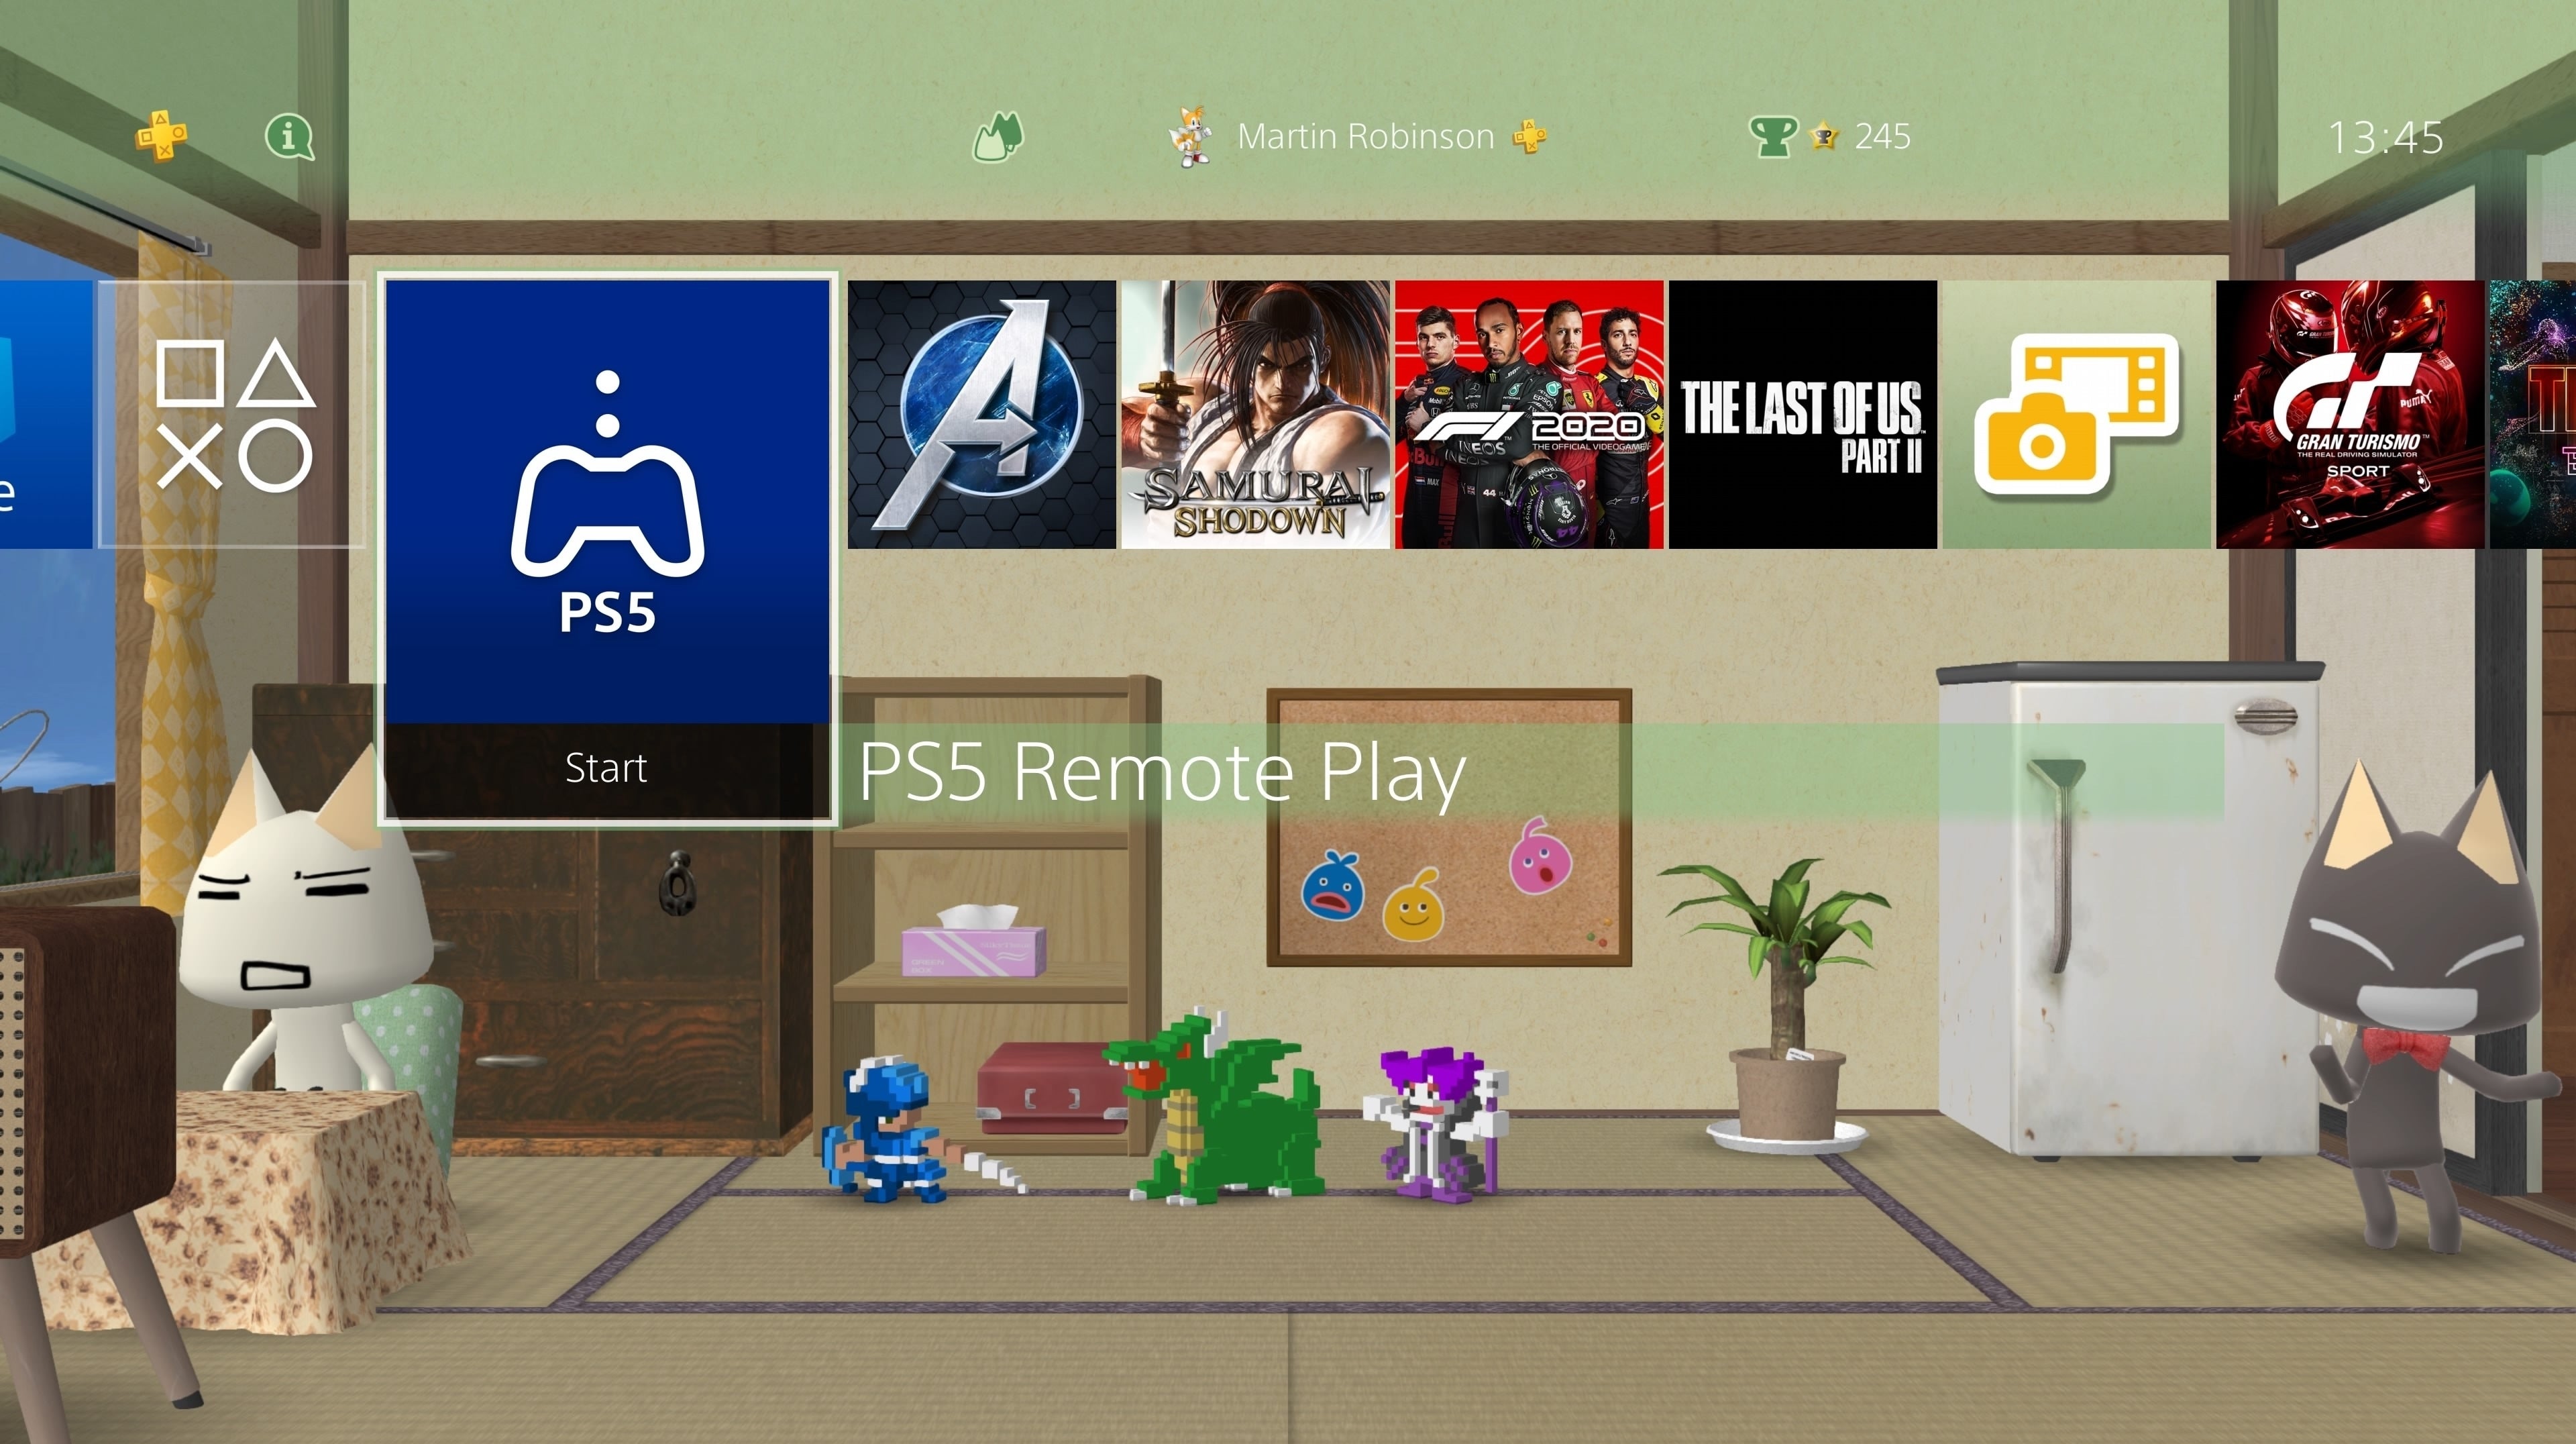 Imagen para La nueva app de Remote Play de PS4 permite jugar a juegos de PS5 con un DualShock